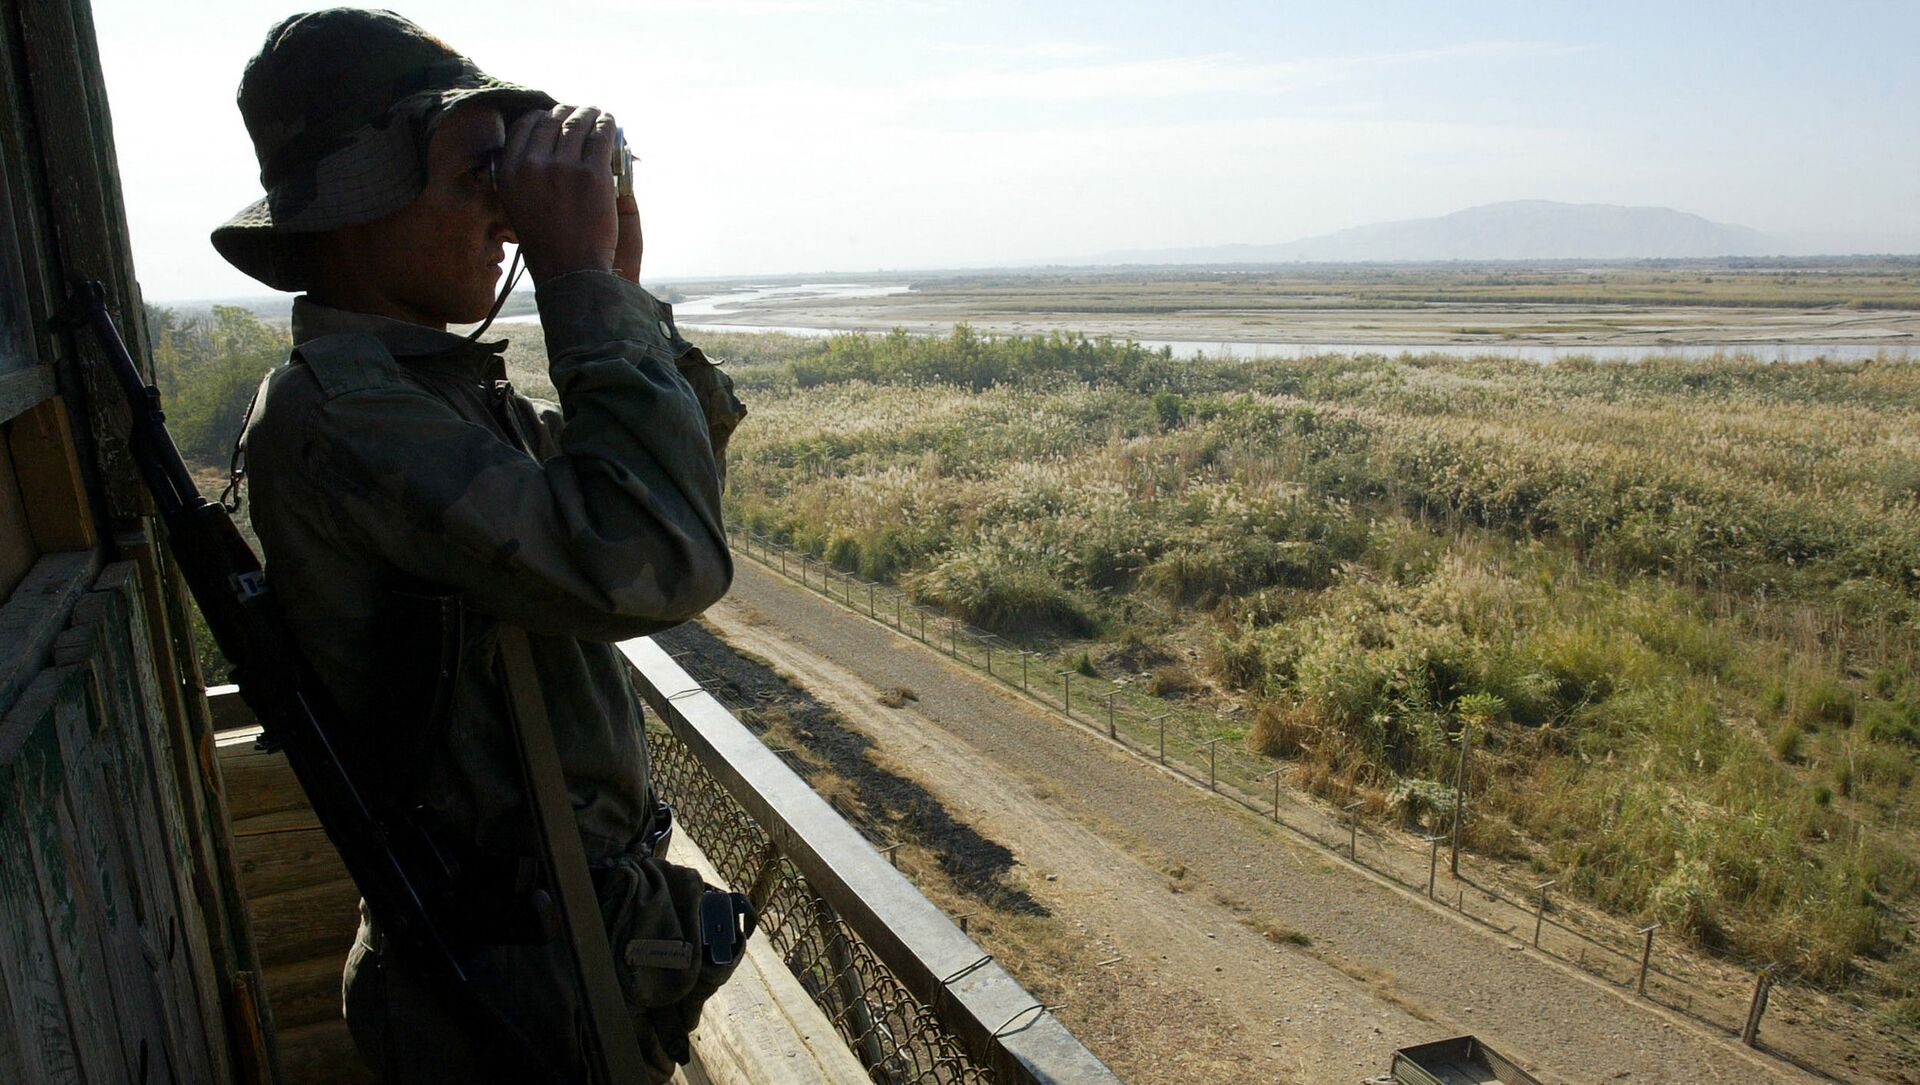 Солдат таджикской пограничной службы патрулирует реку Пяндж на границе с Афганистаном в 220 км от Душанбе - Sputnik Азербайджан, 1920, 06.06.2021